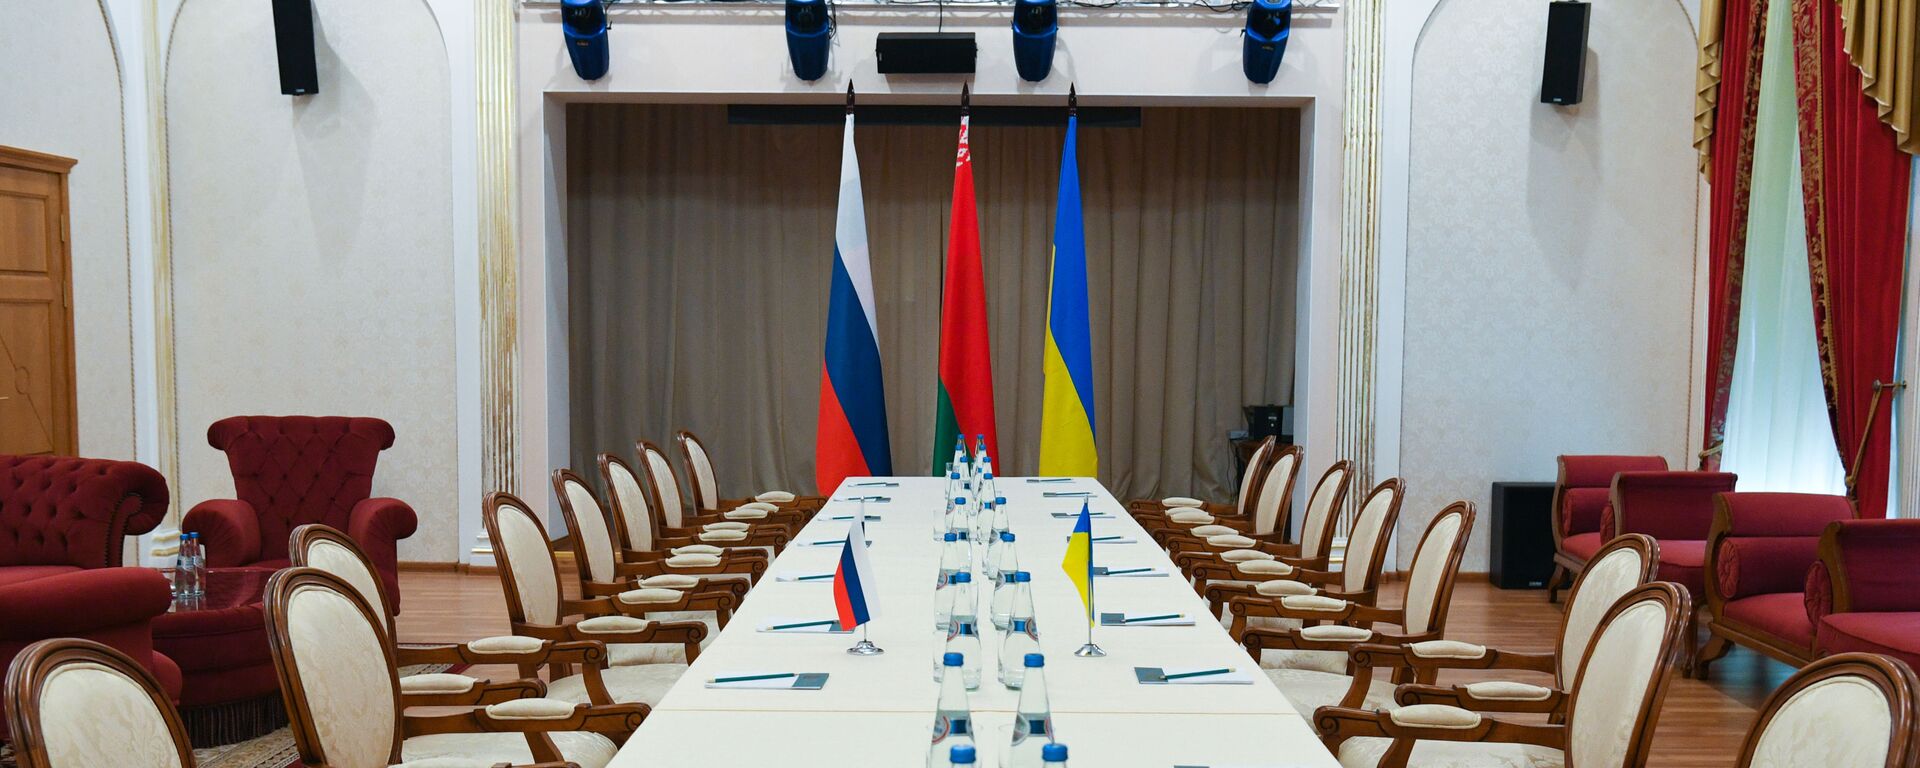 Hội trường nơi diễn ra cuộc hội đàm giữa Nga và Ukraina - Sputnik Việt Nam, 1920, 17.03.2022